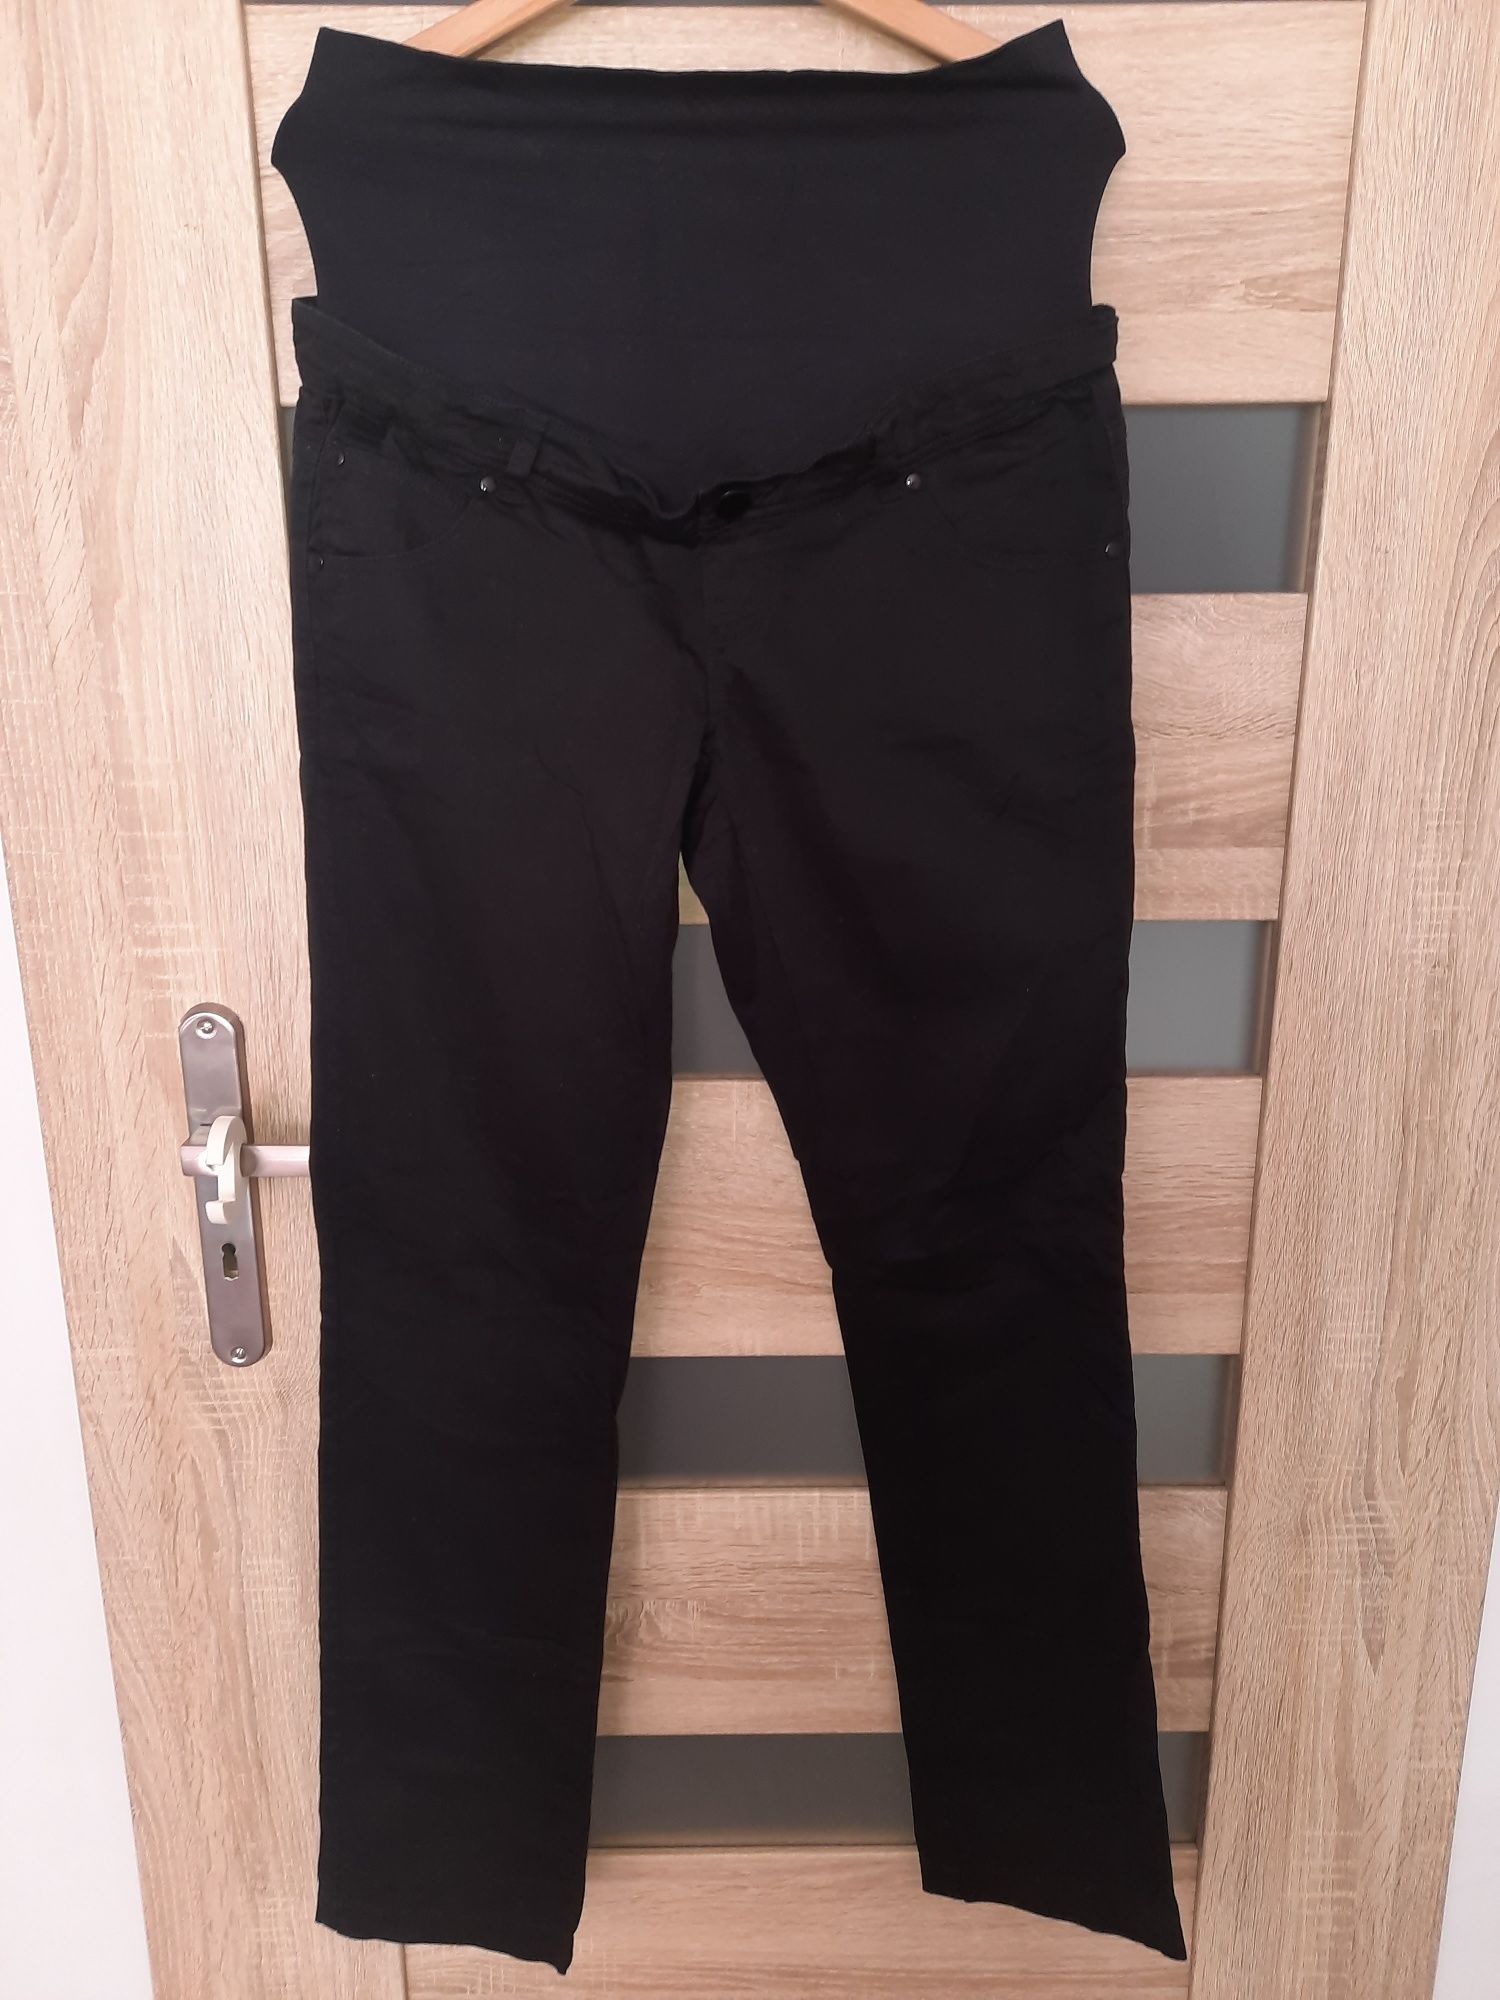 Spodnie jeansy ciążowe Mamalicious H&M rozmiar M, czarne, stan idealny